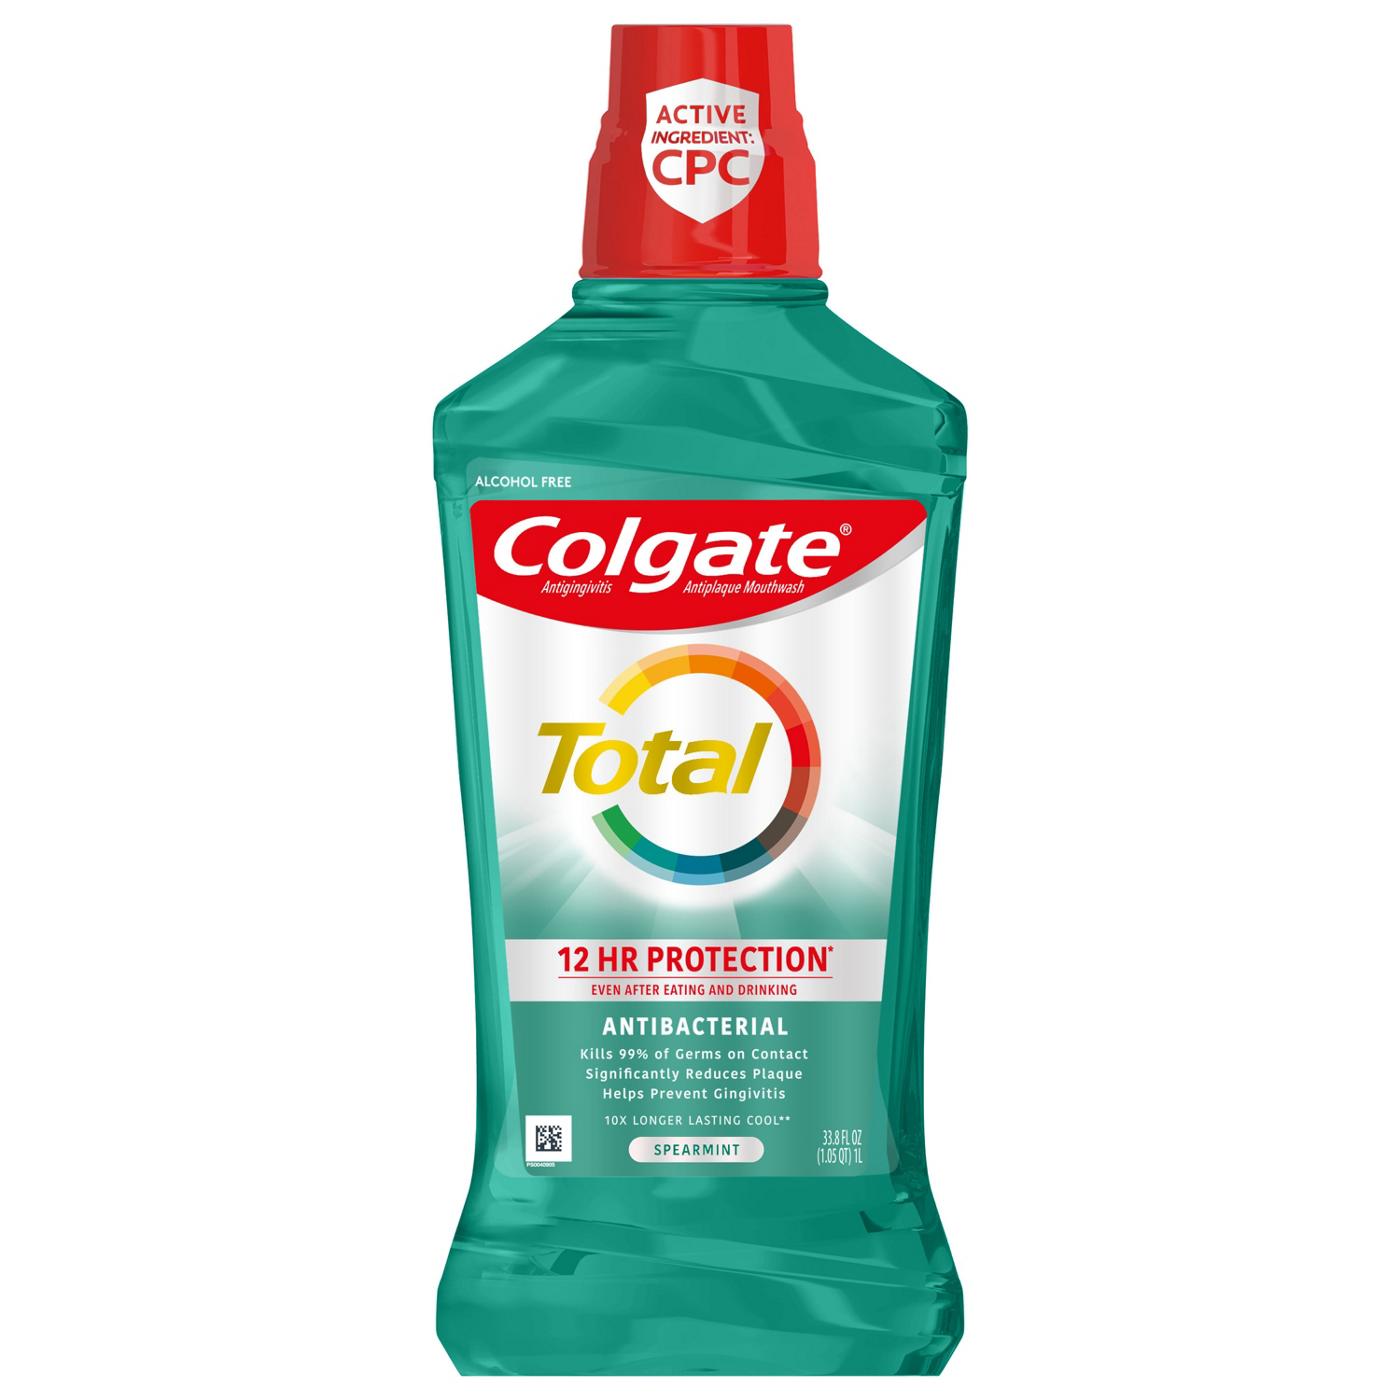 Colgate Total Advanced Pro-Shield Spearmint Surge Mouthwash; image 1 of 7